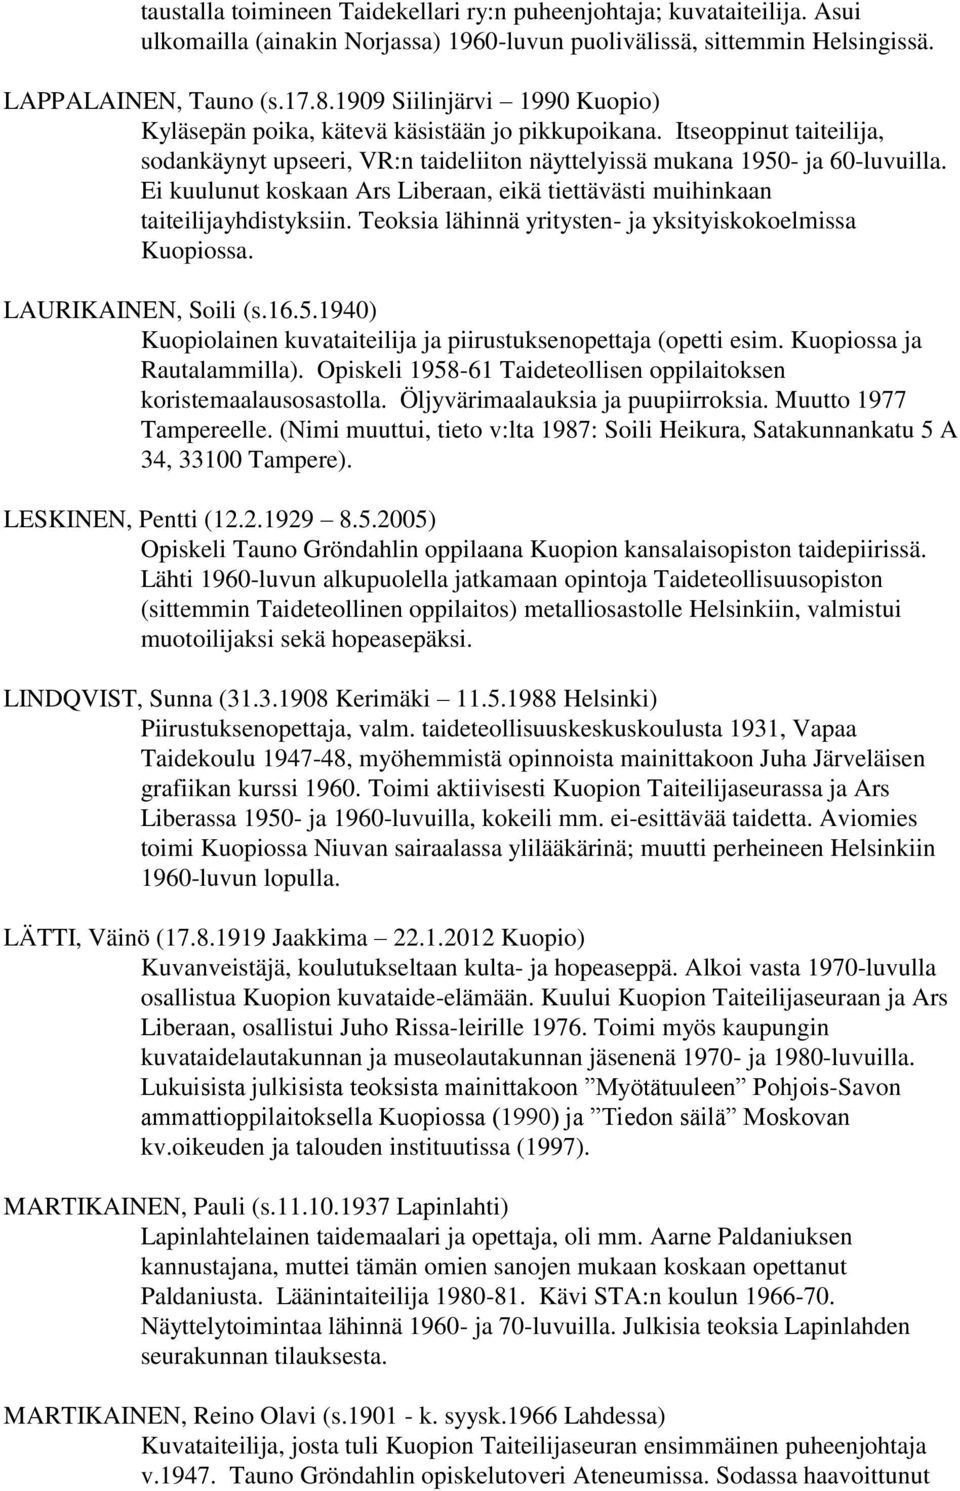 Ei kuulunut koskaan Ars Liberaan, eikä tiettävästi muihinkaan taiteilijayhdistyksiin. Teoksia lähinnä yritysten- ja yksityiskokoelmissa Kuopiossa. LAURIKAINEN, Soili (s.16.5.